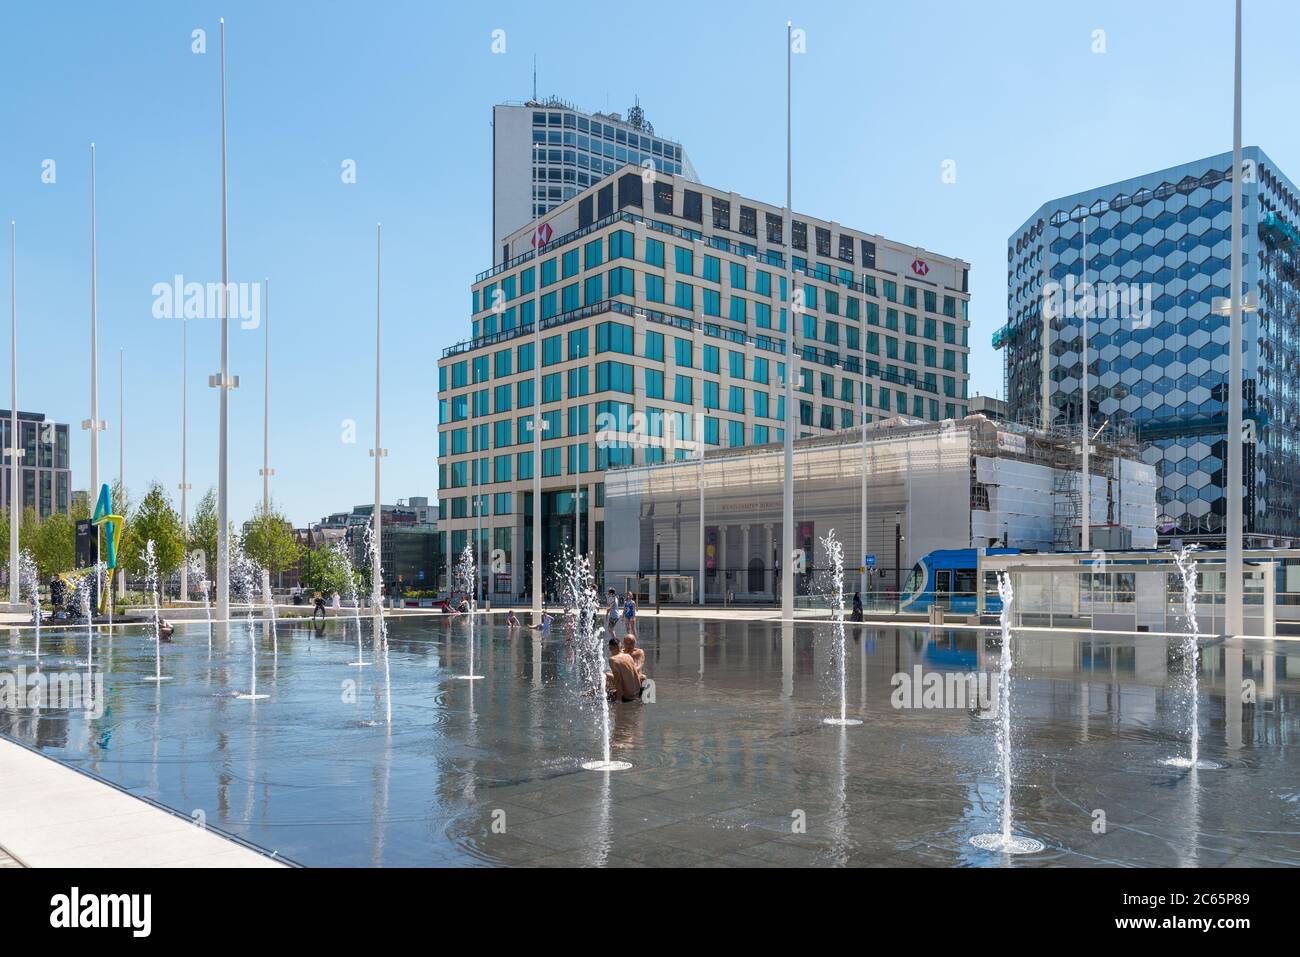 Les gens se rafraîchissent dans les fontaines d'eau du miroir d'eau de la place du Centenaire, Birmingham, Royaume-Uni Banque D'Images